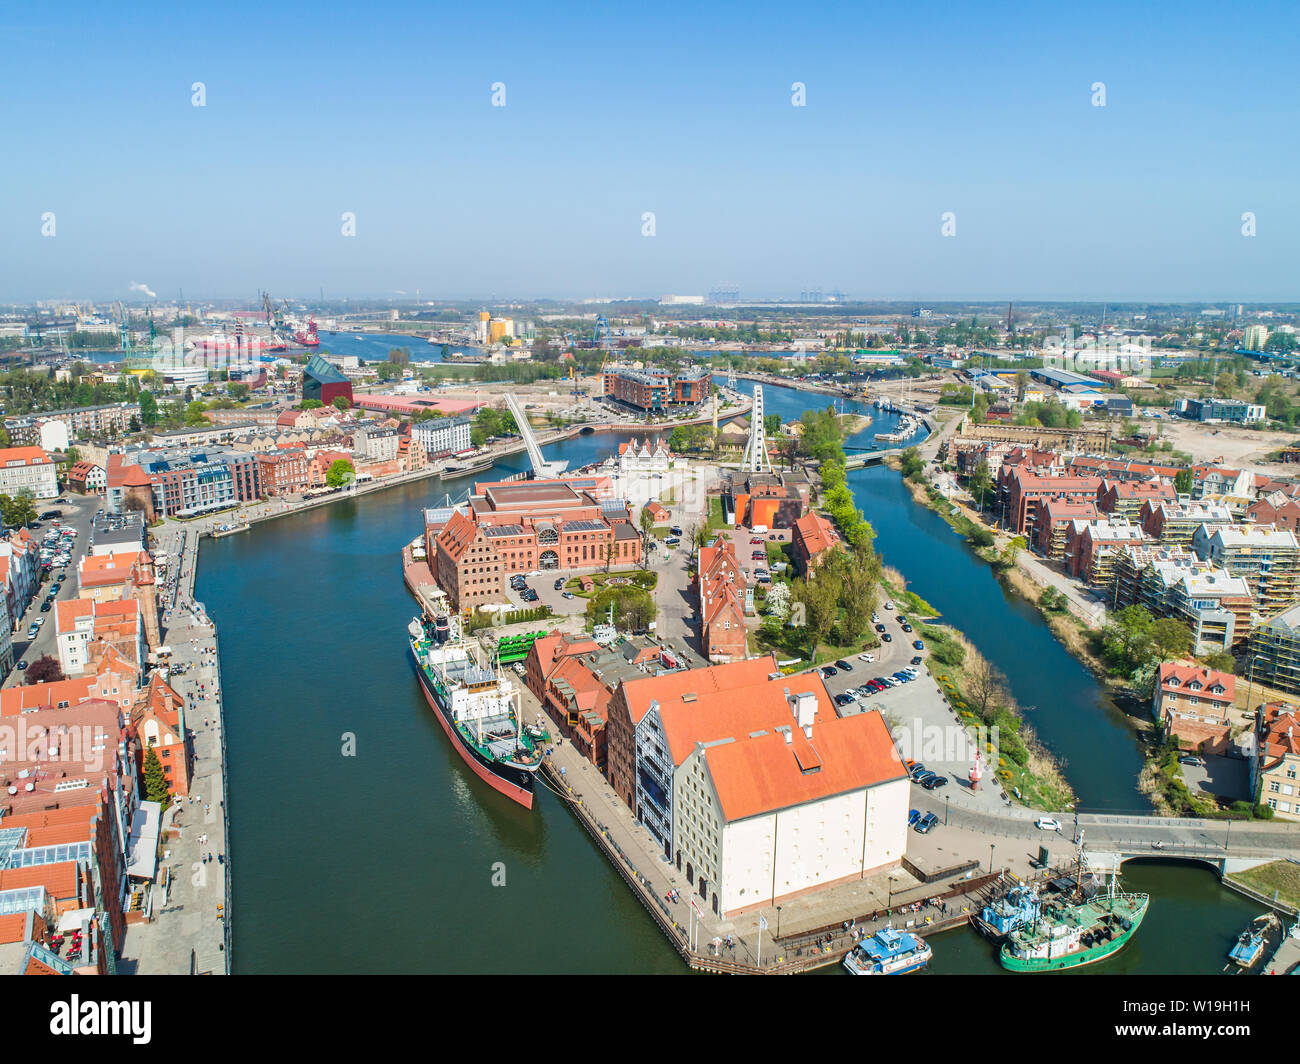 Ołowianka e il fiume Motława dall occhio di un uccello. Paesaggio di Danzica dall'aria. La città portuale di Danzica. Foto Stock